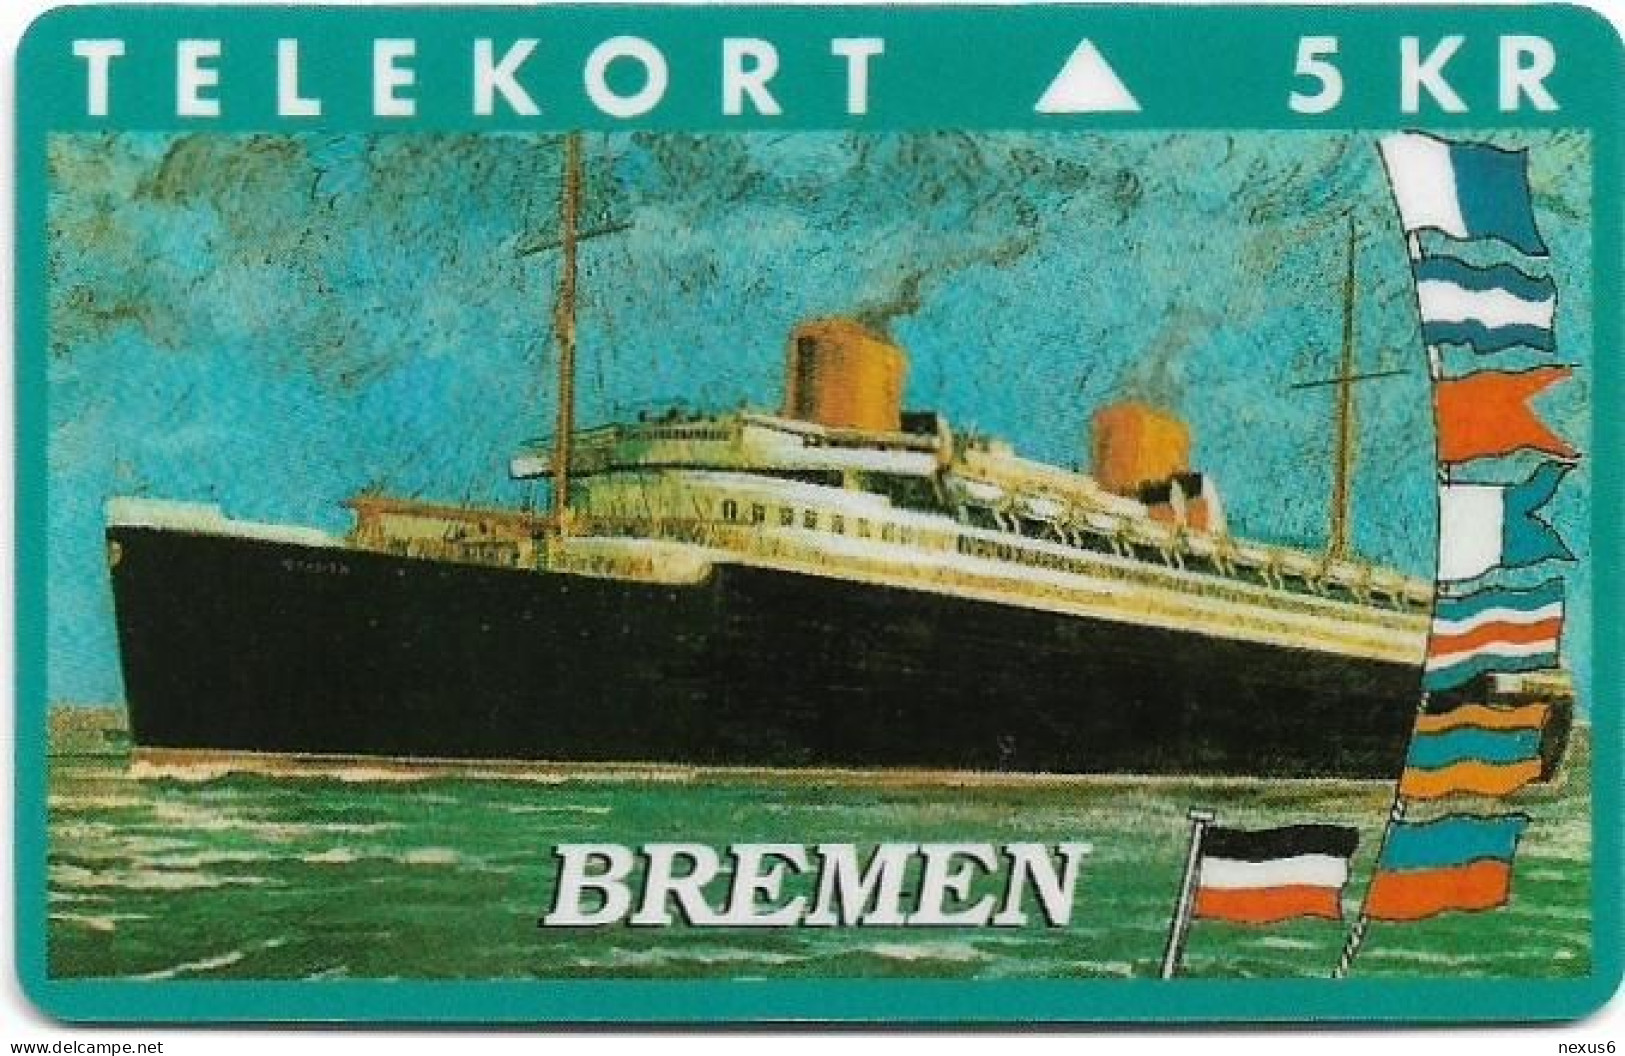 Denmark - KTAS - Ships (Green) - Bremen - TDKP129 - 02.1995, 1.500ex, 5kr, Used - Danemark